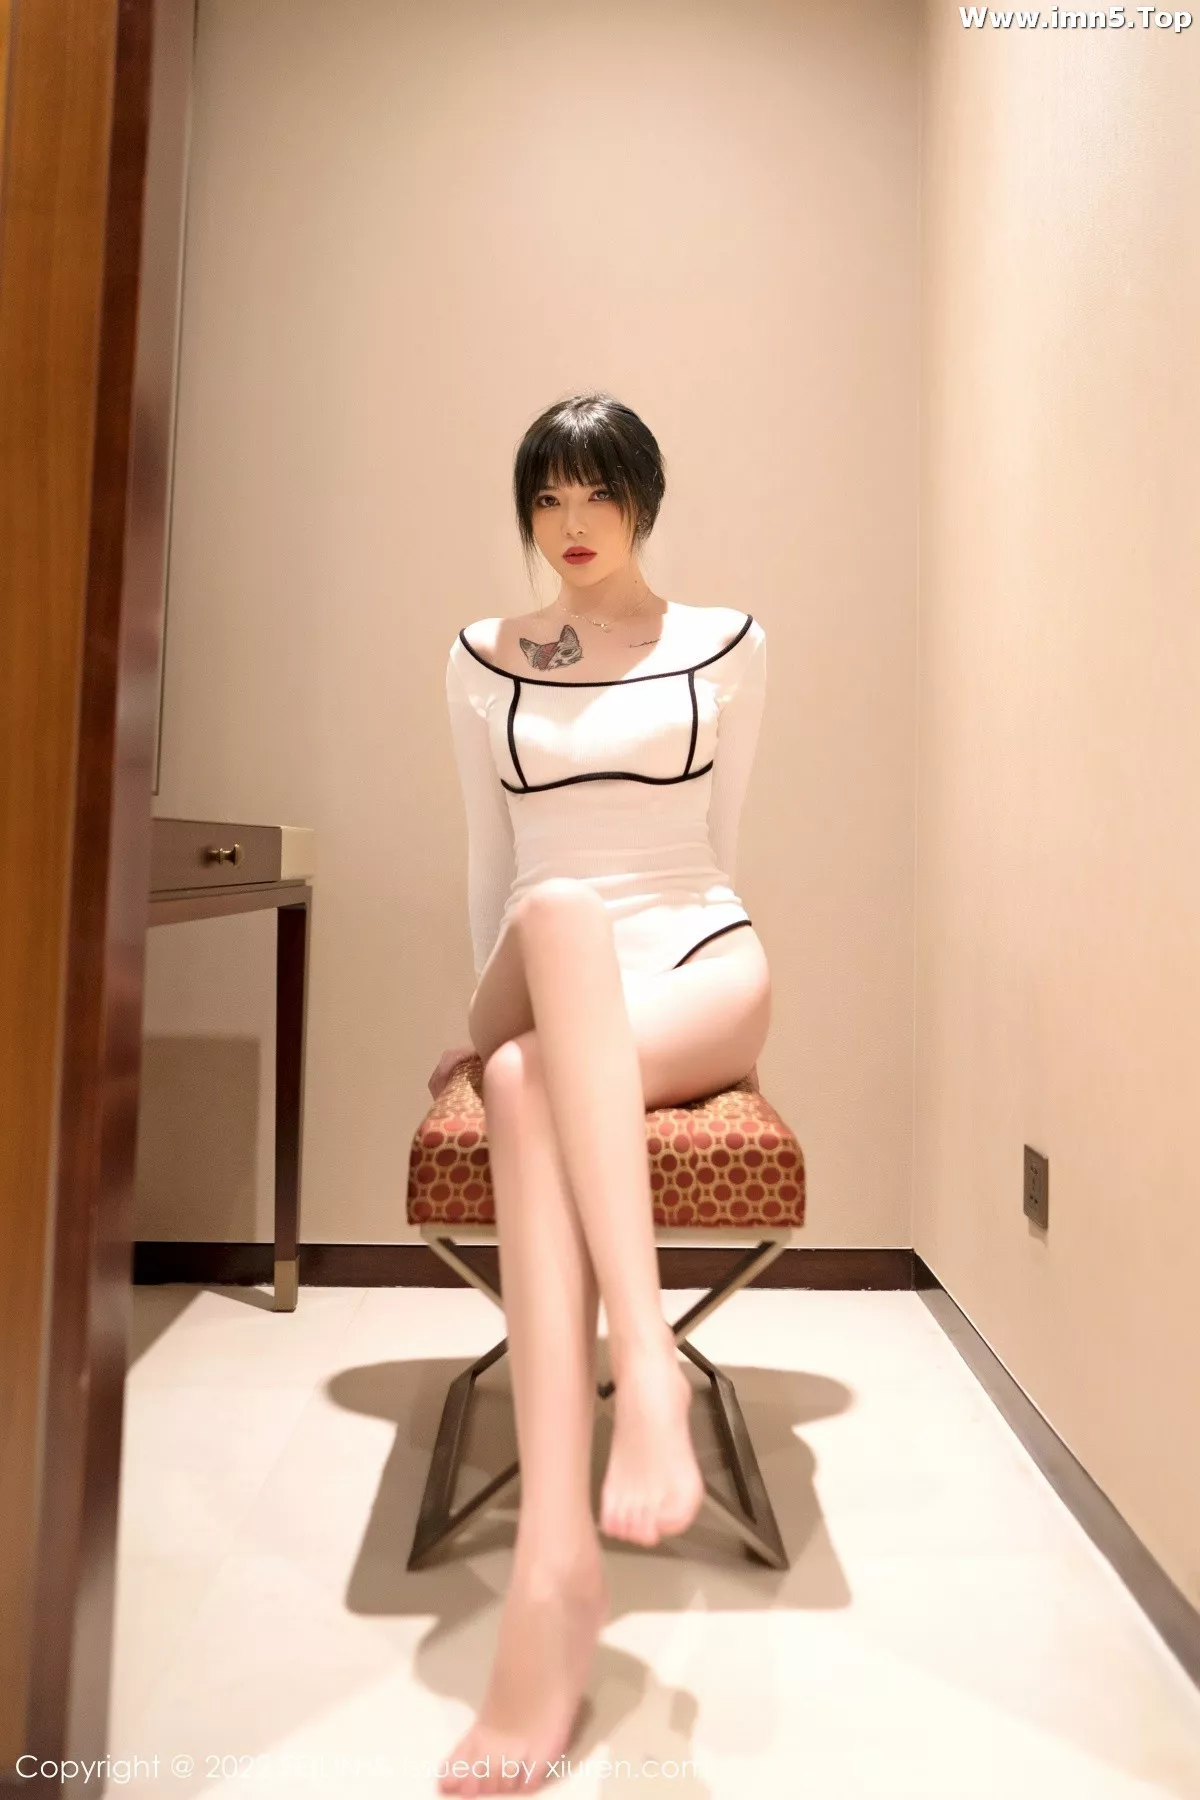 [FeiLin嗲囡囡]VOL.436_模特Arude薇薇红色露肩连衣裙+白色低胸连体衣秀曼妙身材写真44P